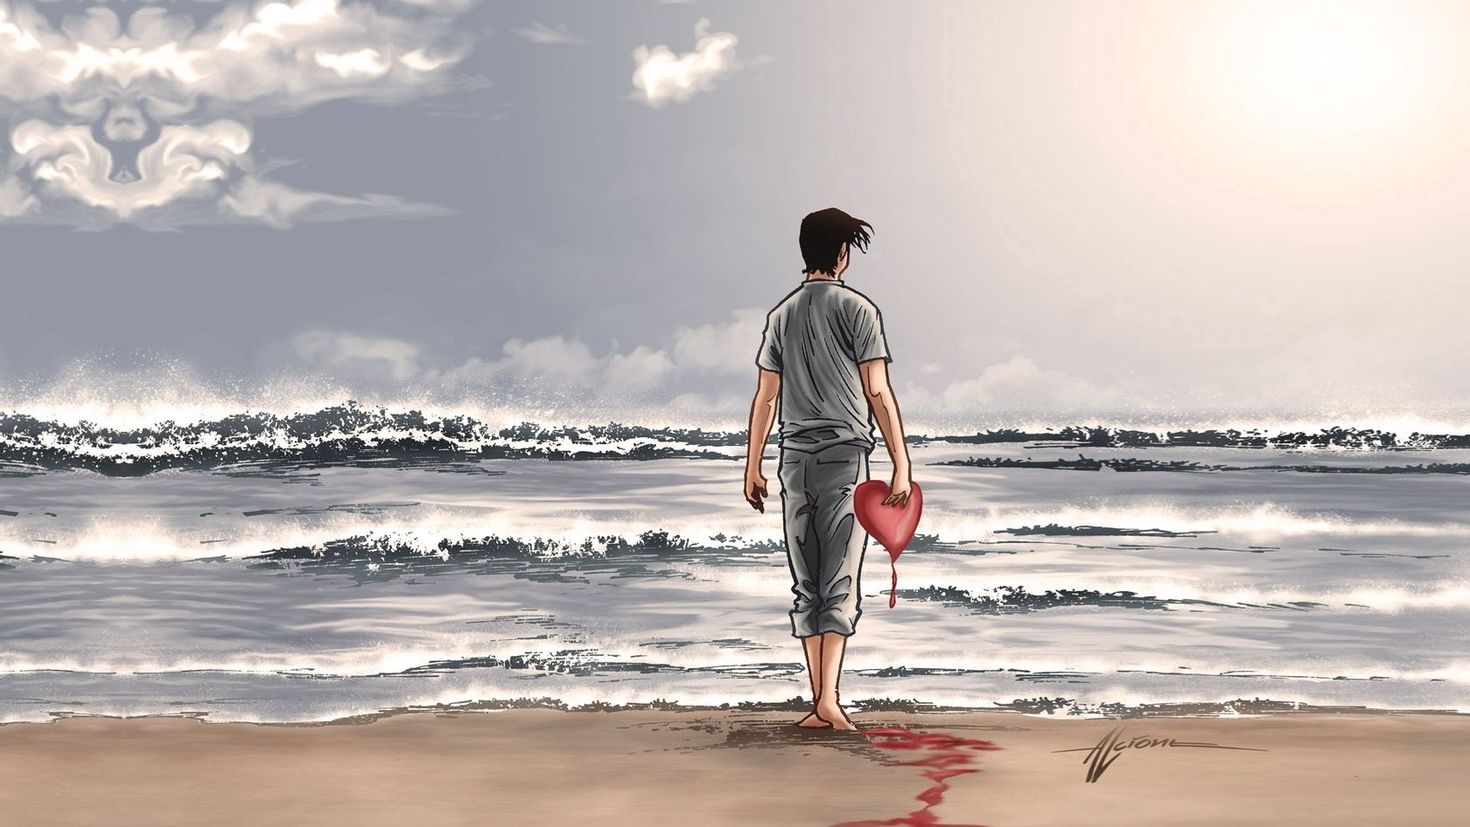 Лов мен. Люди на море. Парень с сердцем. Одинокий человек на берегу моря. Человек с разбитым сердцем.